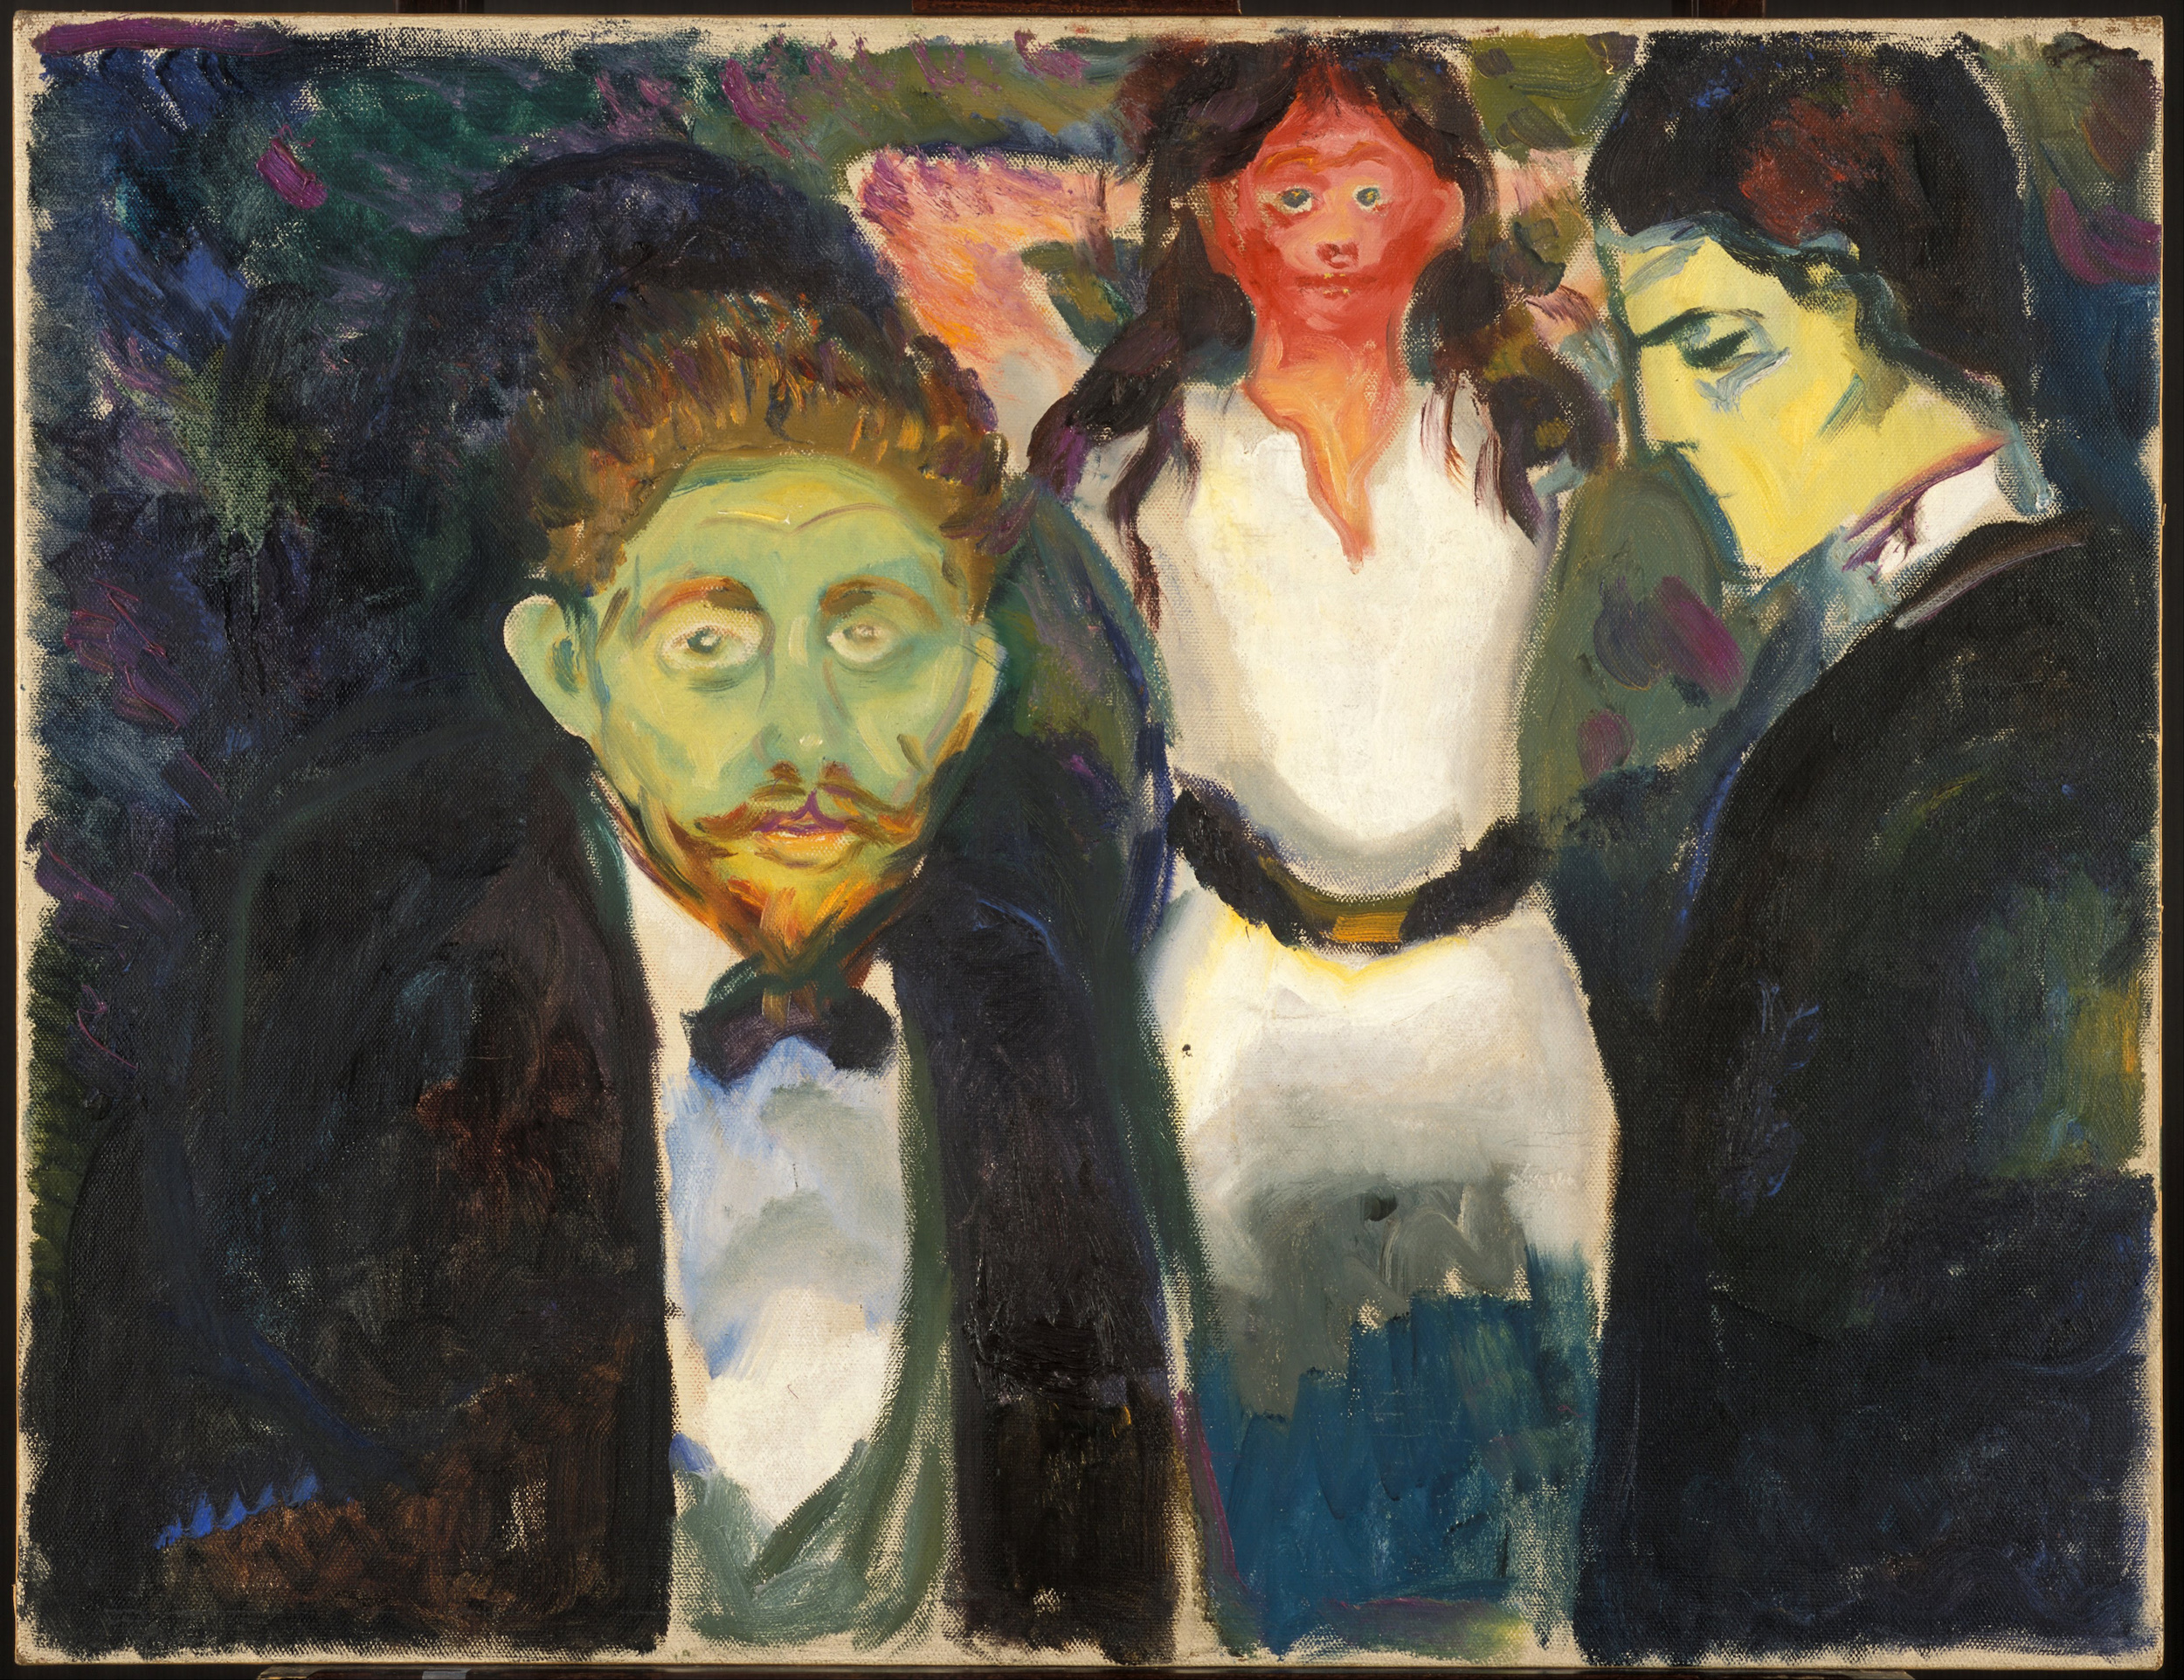 حسادت by Edvard Munch - 1907 - 98 x 75 cm 